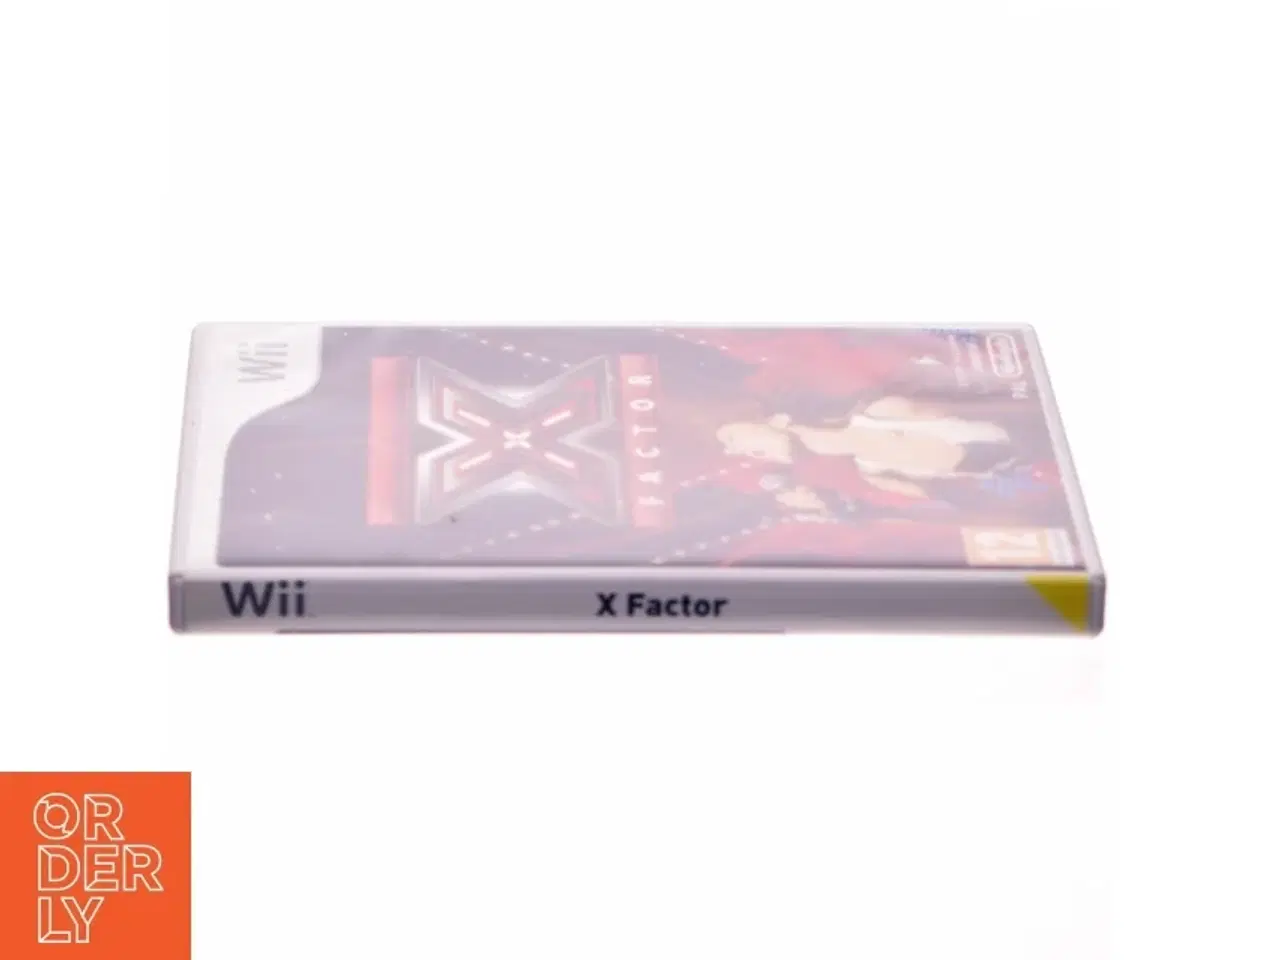 Billede 2 - x factor fra Wii